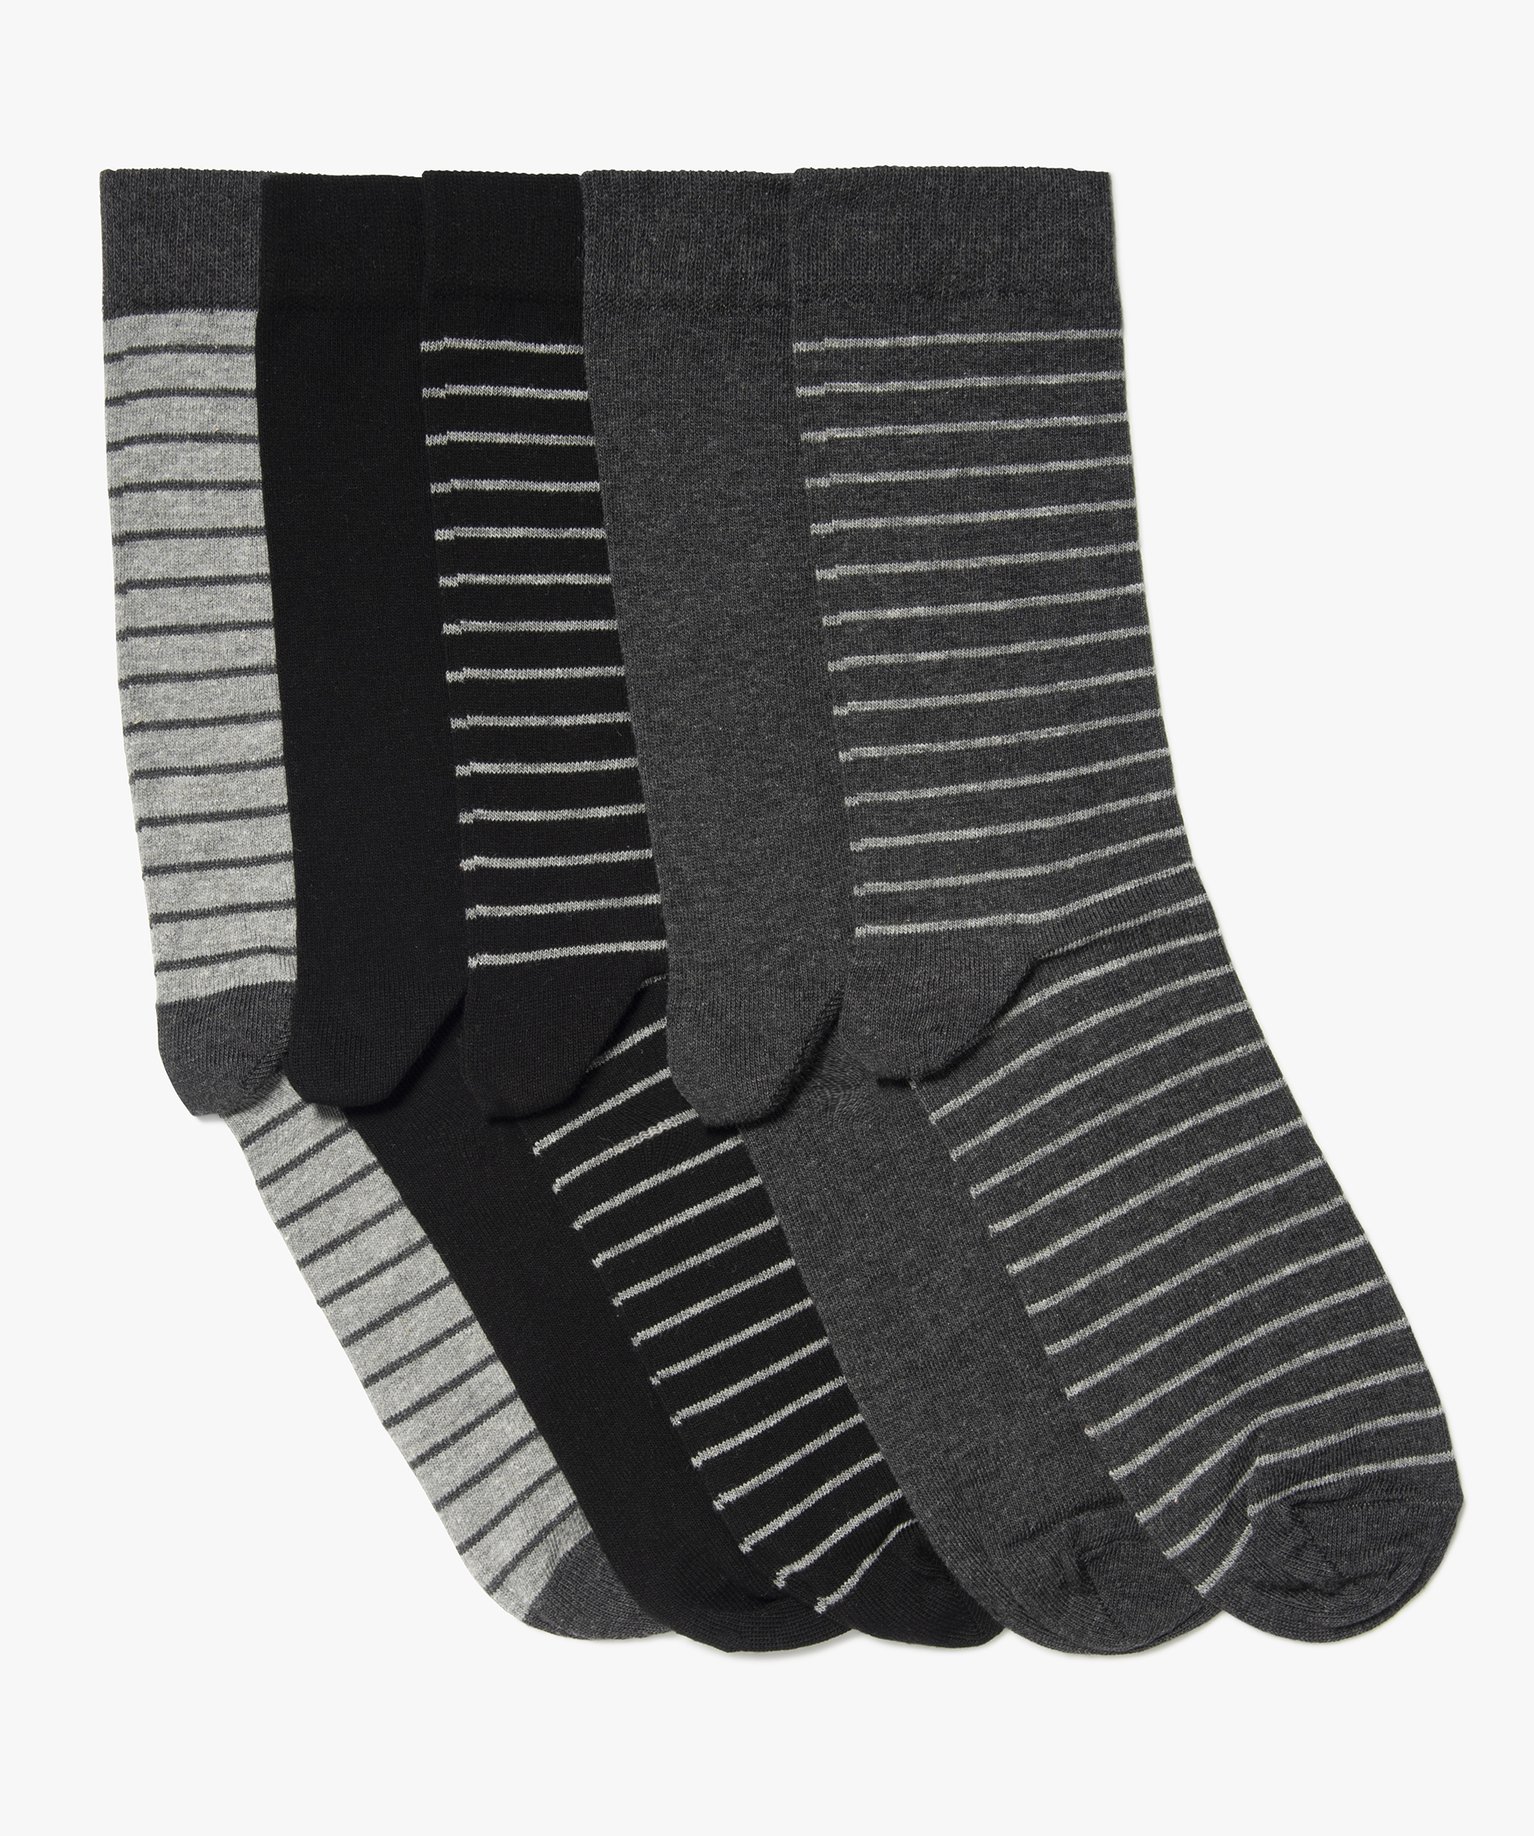 chaussettes homme tige haute a rayures (lot de 5) noir